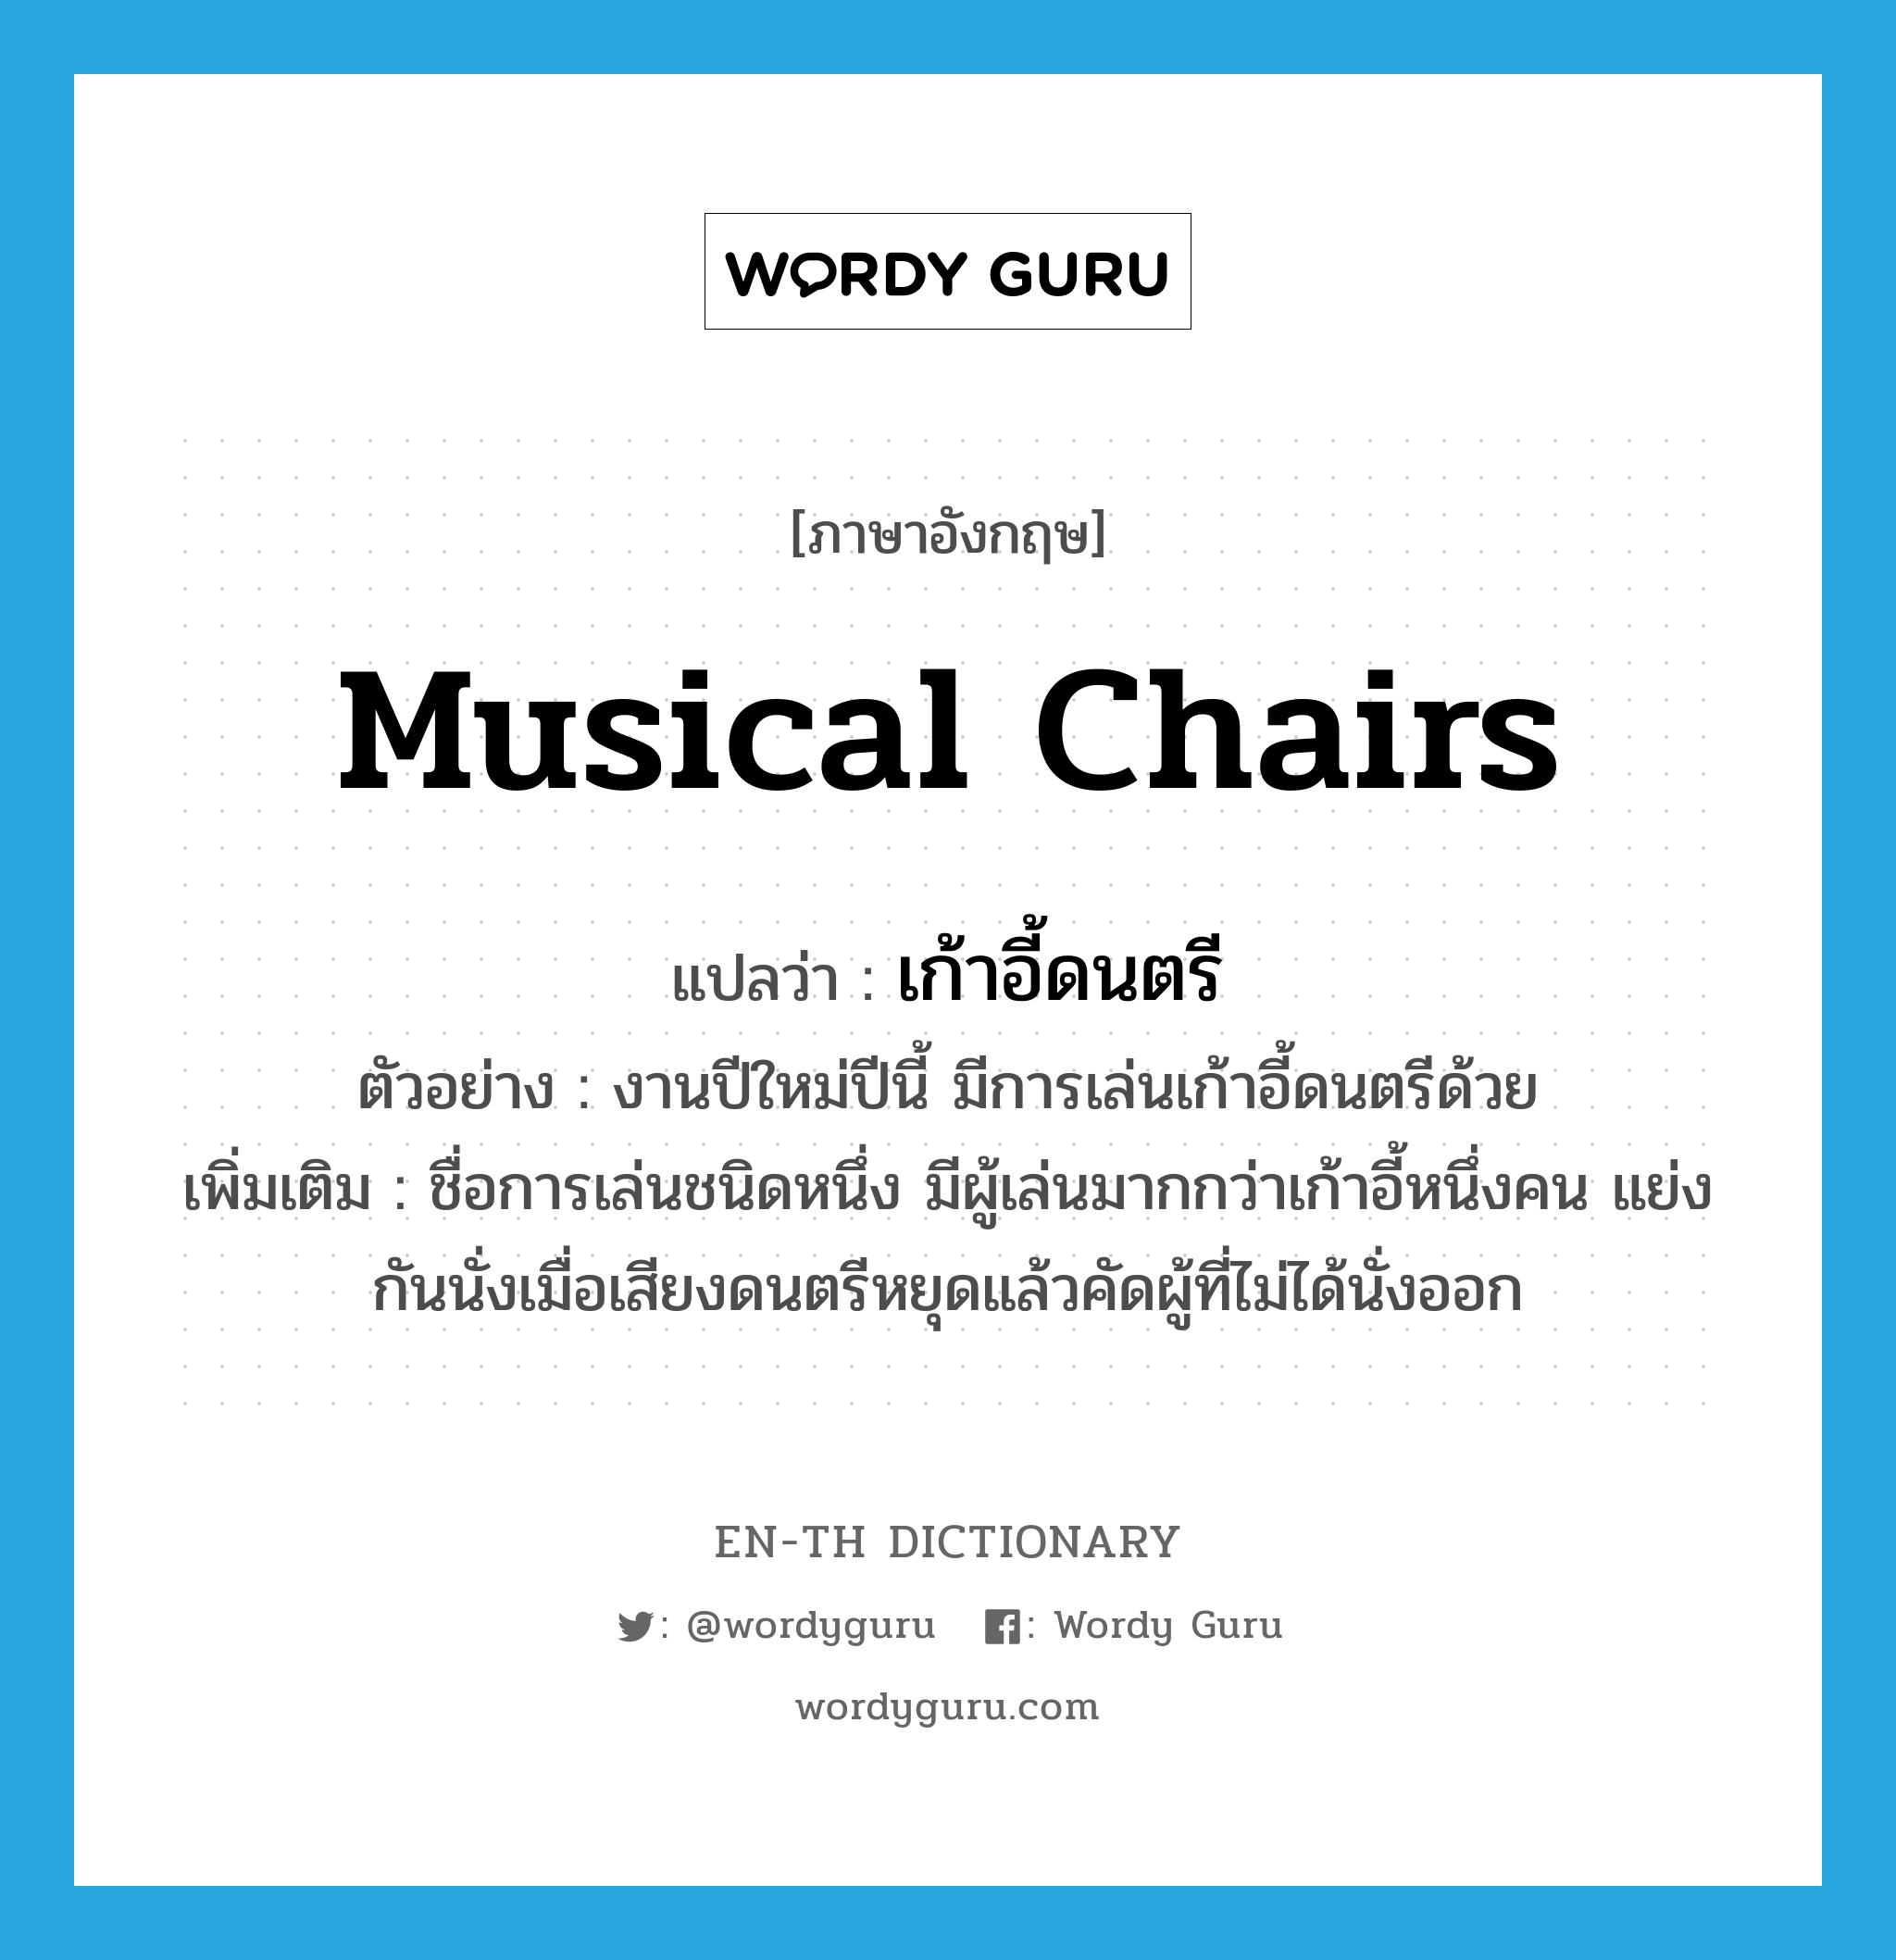 เก้าอี้ดนตรี ภาษาอังกฤษ?, คำศัพท์ภาษาอังกฤษ เก้าอี้ดนตรี แปลว่า musical chairs ประเภท N ตัวอย่าง งานปีใหม่ปีนี้ มีการเล่นเก้าอี้ดนตรีด้วย เพิ่มเติม ชื่อการเล่นชนิดหนึ่ง มีผู้เล่นมากกว่าเก้าอี้หนึ่งคน แย่งกันนั่งเมื่อเสียงดนตรีหยุดแล้วคัดผู้ที่ไม่ได้นั่งออก หมวด N